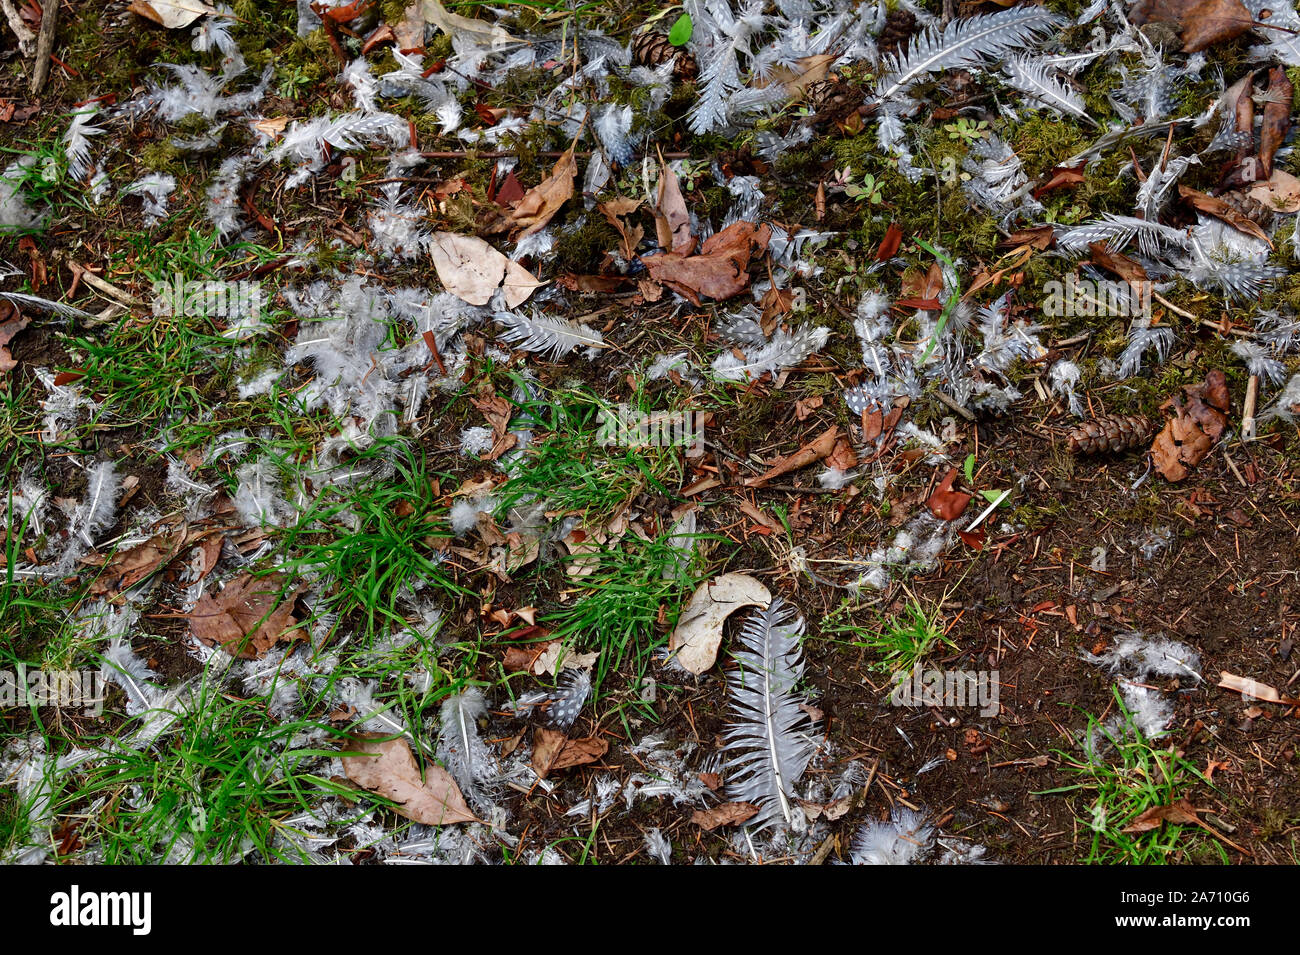 Le plumage des oiseaux dispersés autour de la surface du sol dans une région rurale de l'Alberta au Canada. Banque D'Images